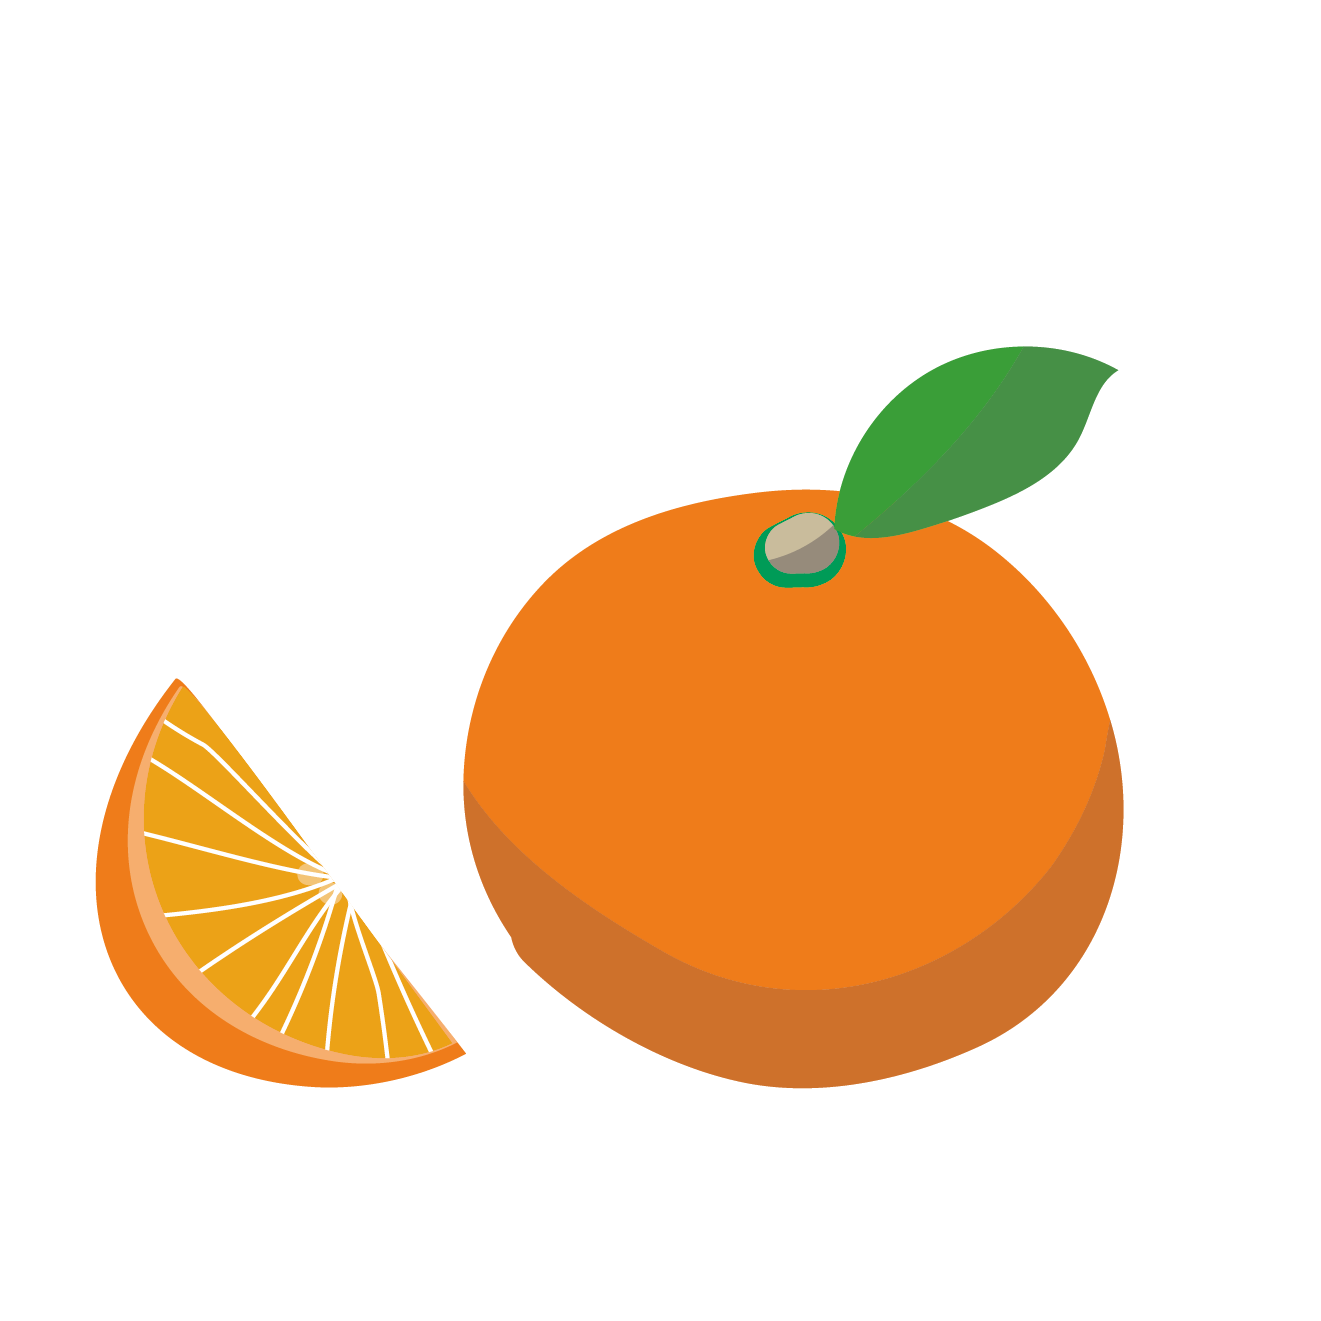 オレンジ おれんじ のイラスト 柑橘類 商用フリー 無料 のイラスト素材なら イラストマンション